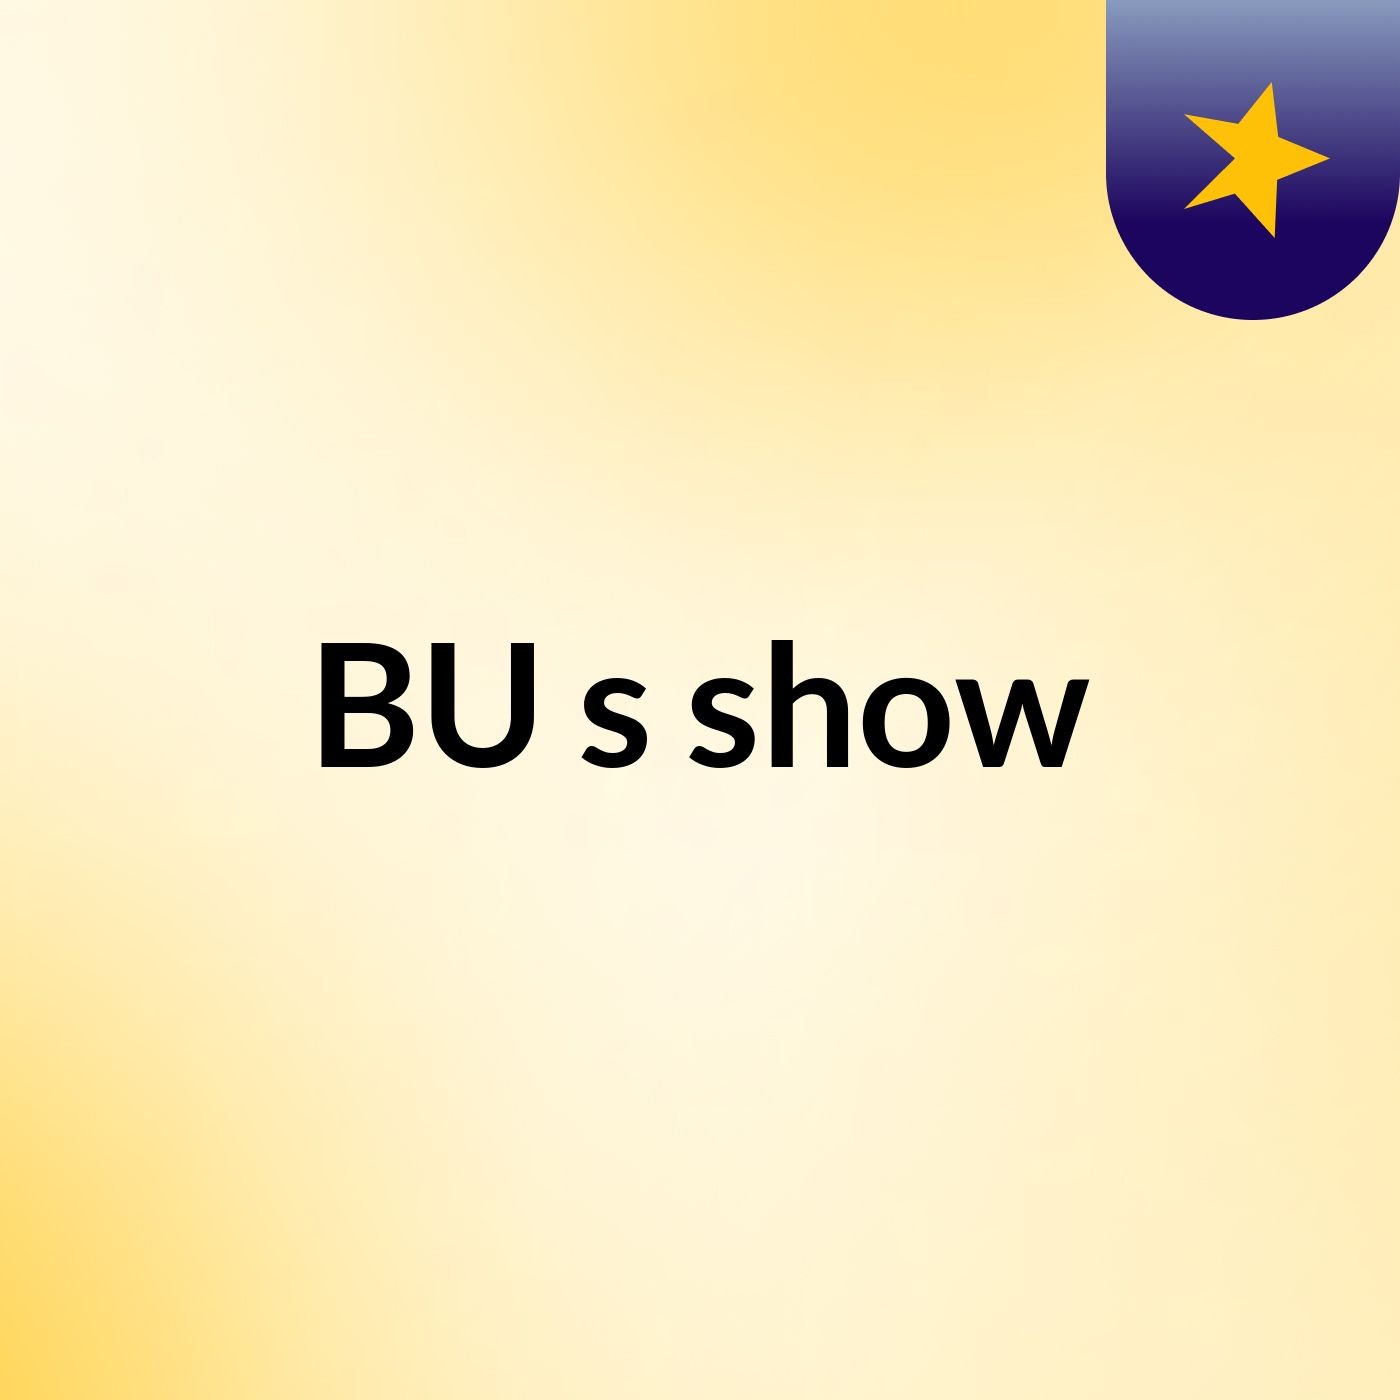 BU's show